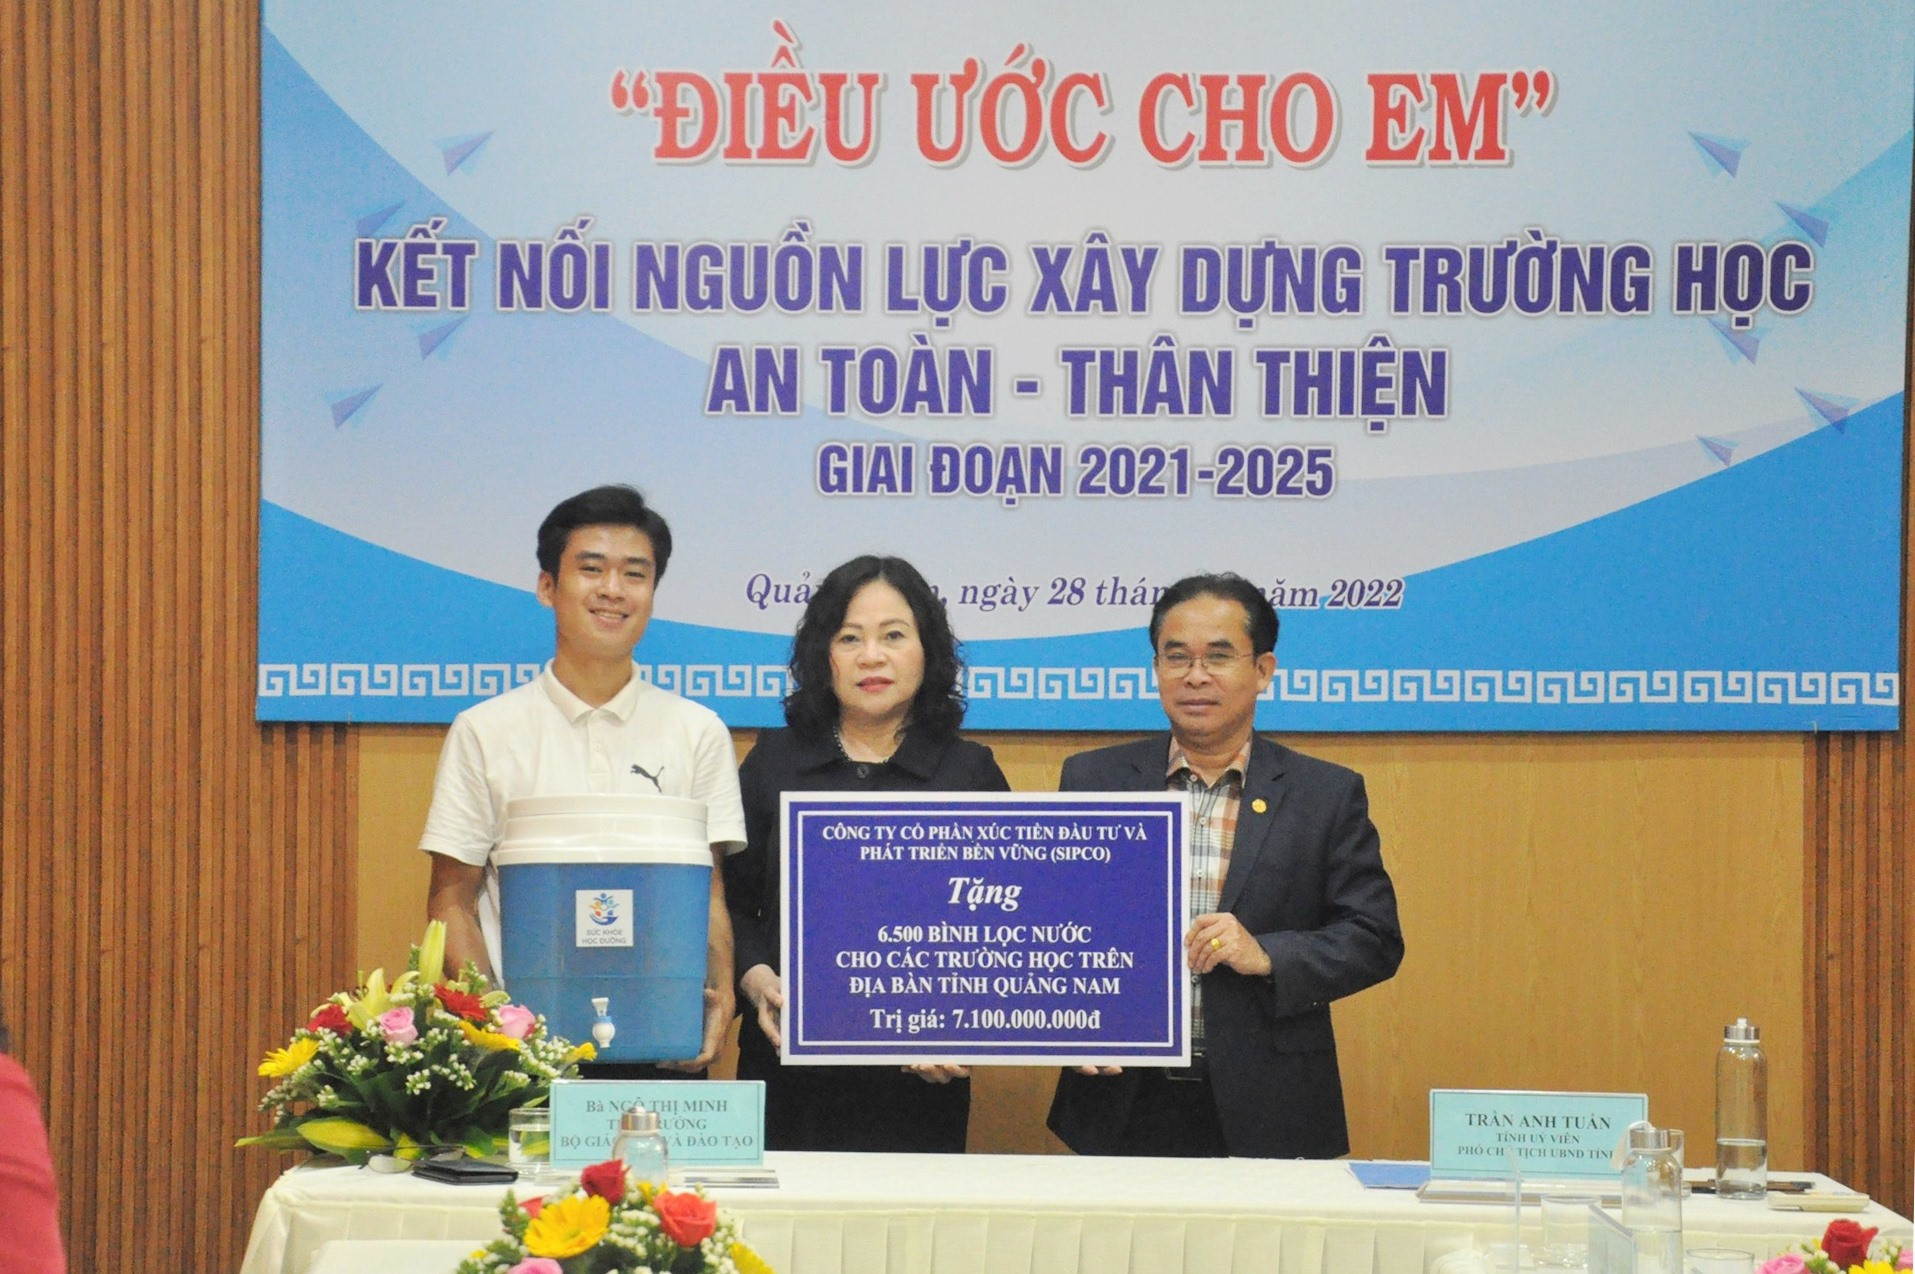 Phó Chủ tịch UBND tỉnh Trần Anh Tuấn nhận quà tặng của các nhà tài trợ do Thứ trưởng Ngô Thị Minh trao. Ảnh: X.P